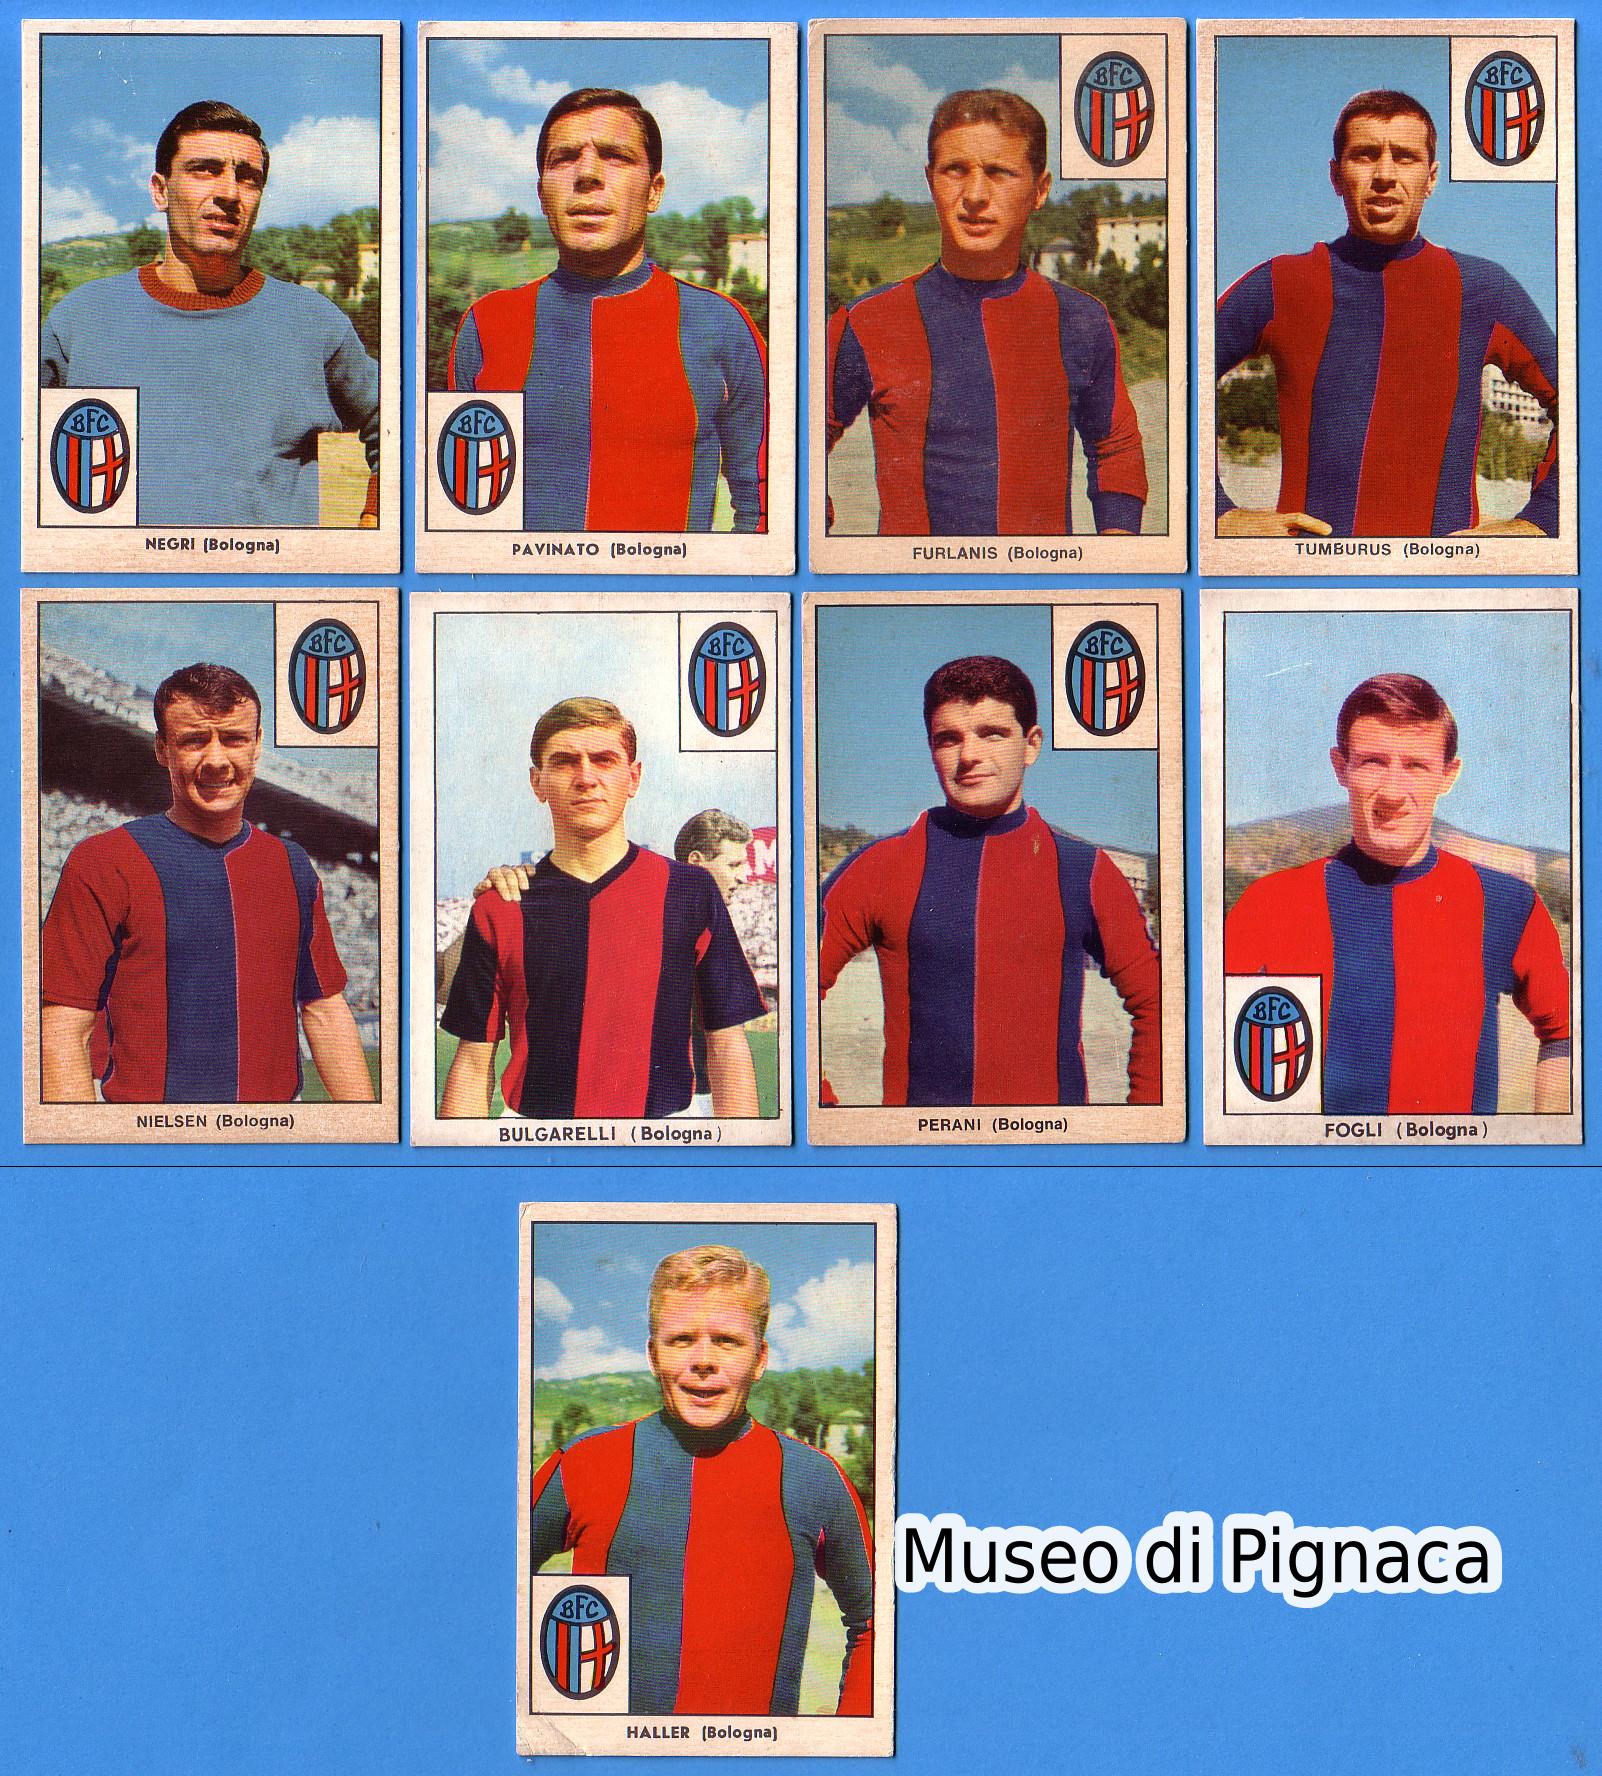 Edizioni TAVER-MATIC 1965-66 figurine Bologna FC